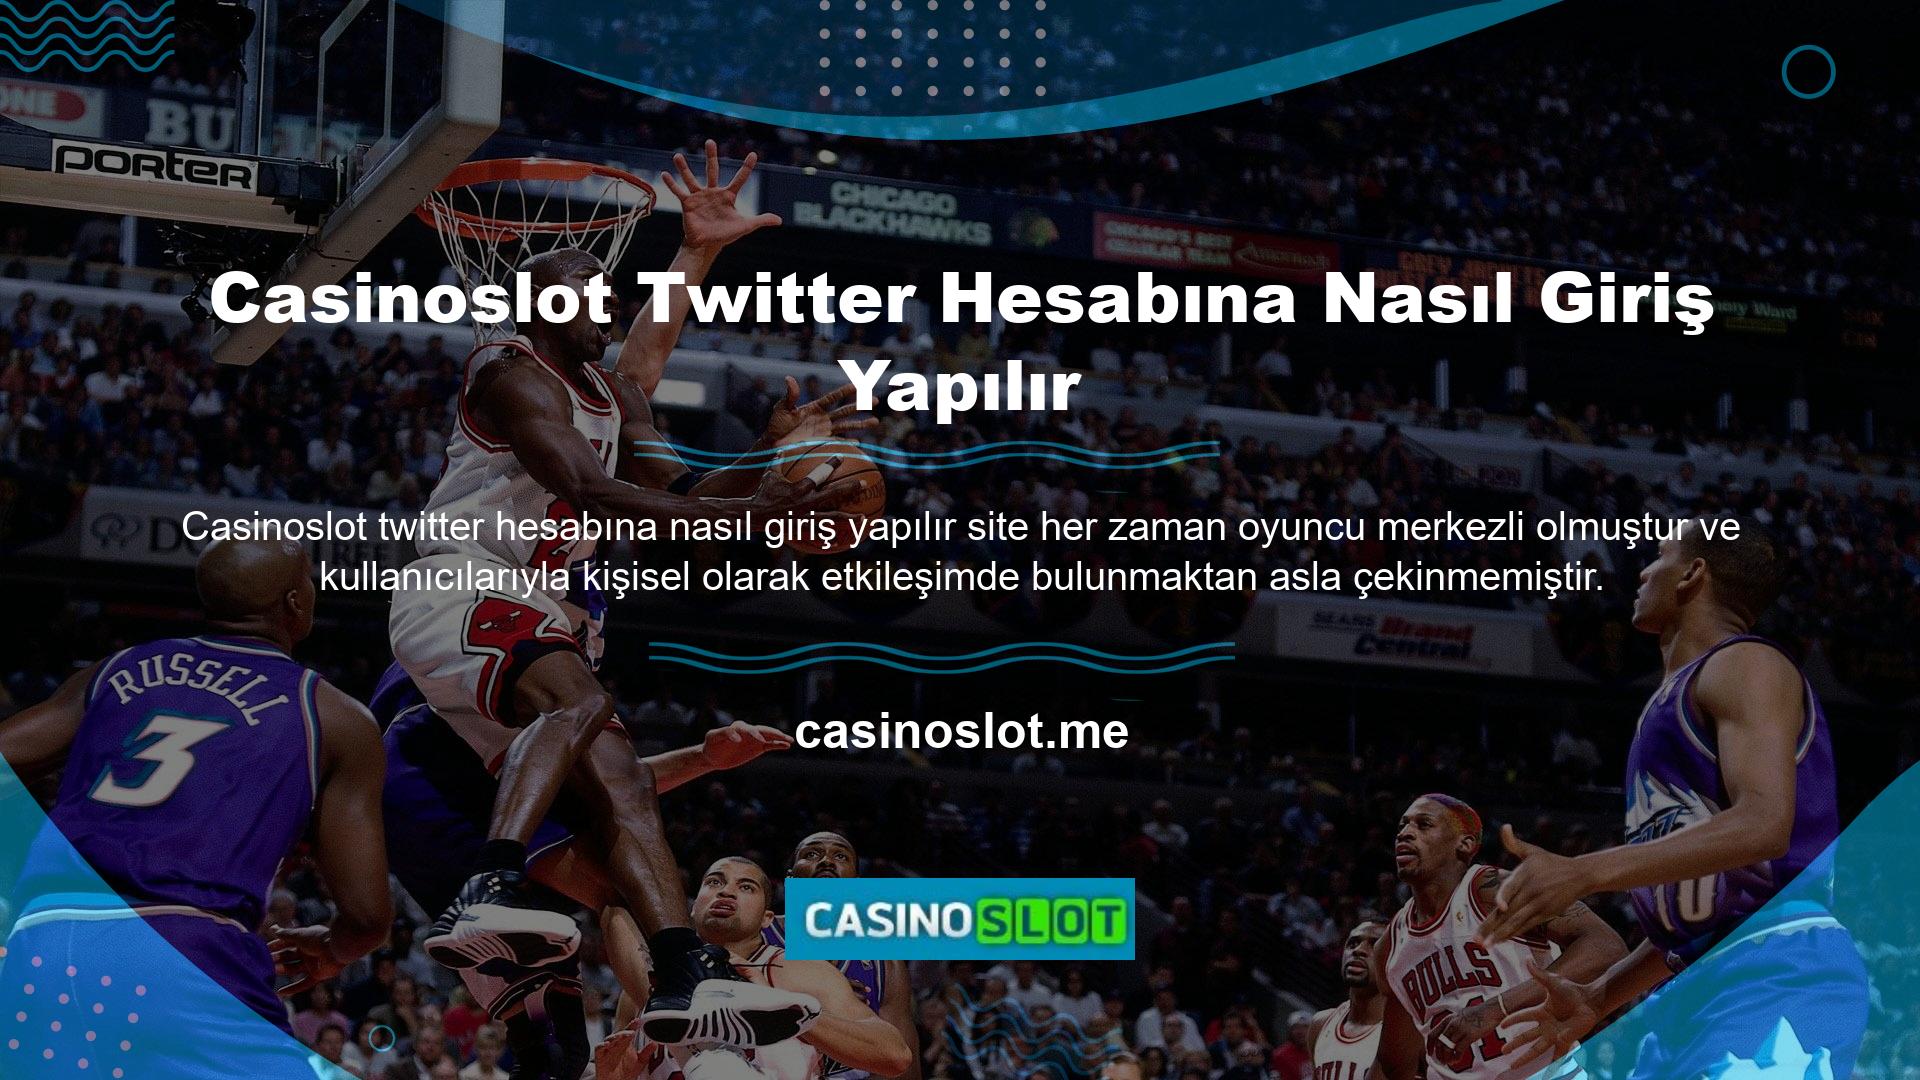 Casinoslot Twitter hesabına nasıl girilir Twitter Türkiye Bu arada Casinoslot Twitter hesabına nasıl girileceği sorusu gelmişti